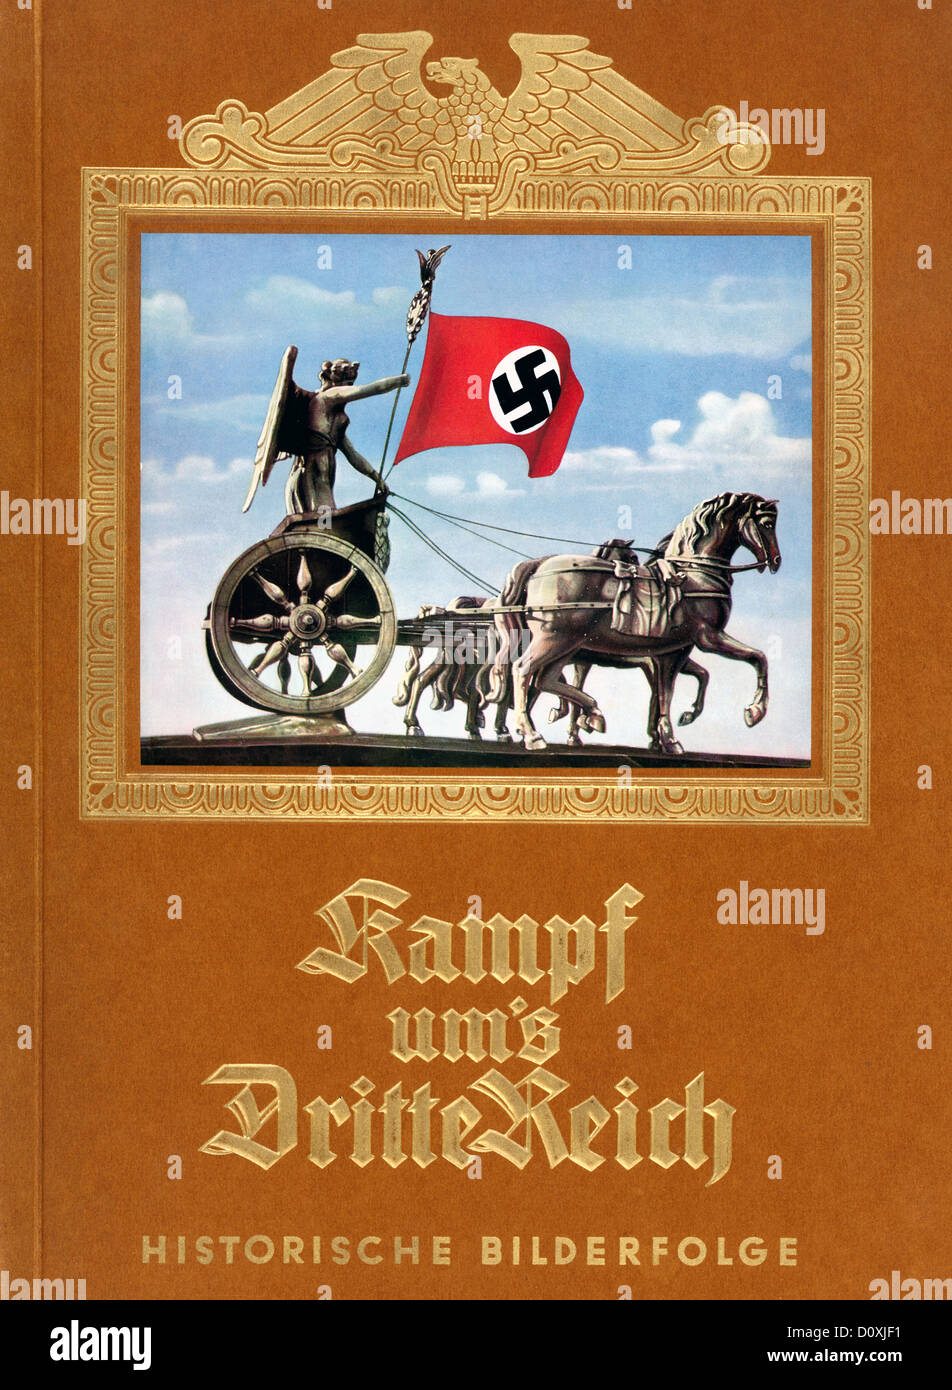 La lotta per il Terzo Reich, carta di sigaretta, album nazista, Reemtsma, Amburgo, Terzo Reich, Germania, 1933, propaganda, SS, Pizzoferrato Foto Stock